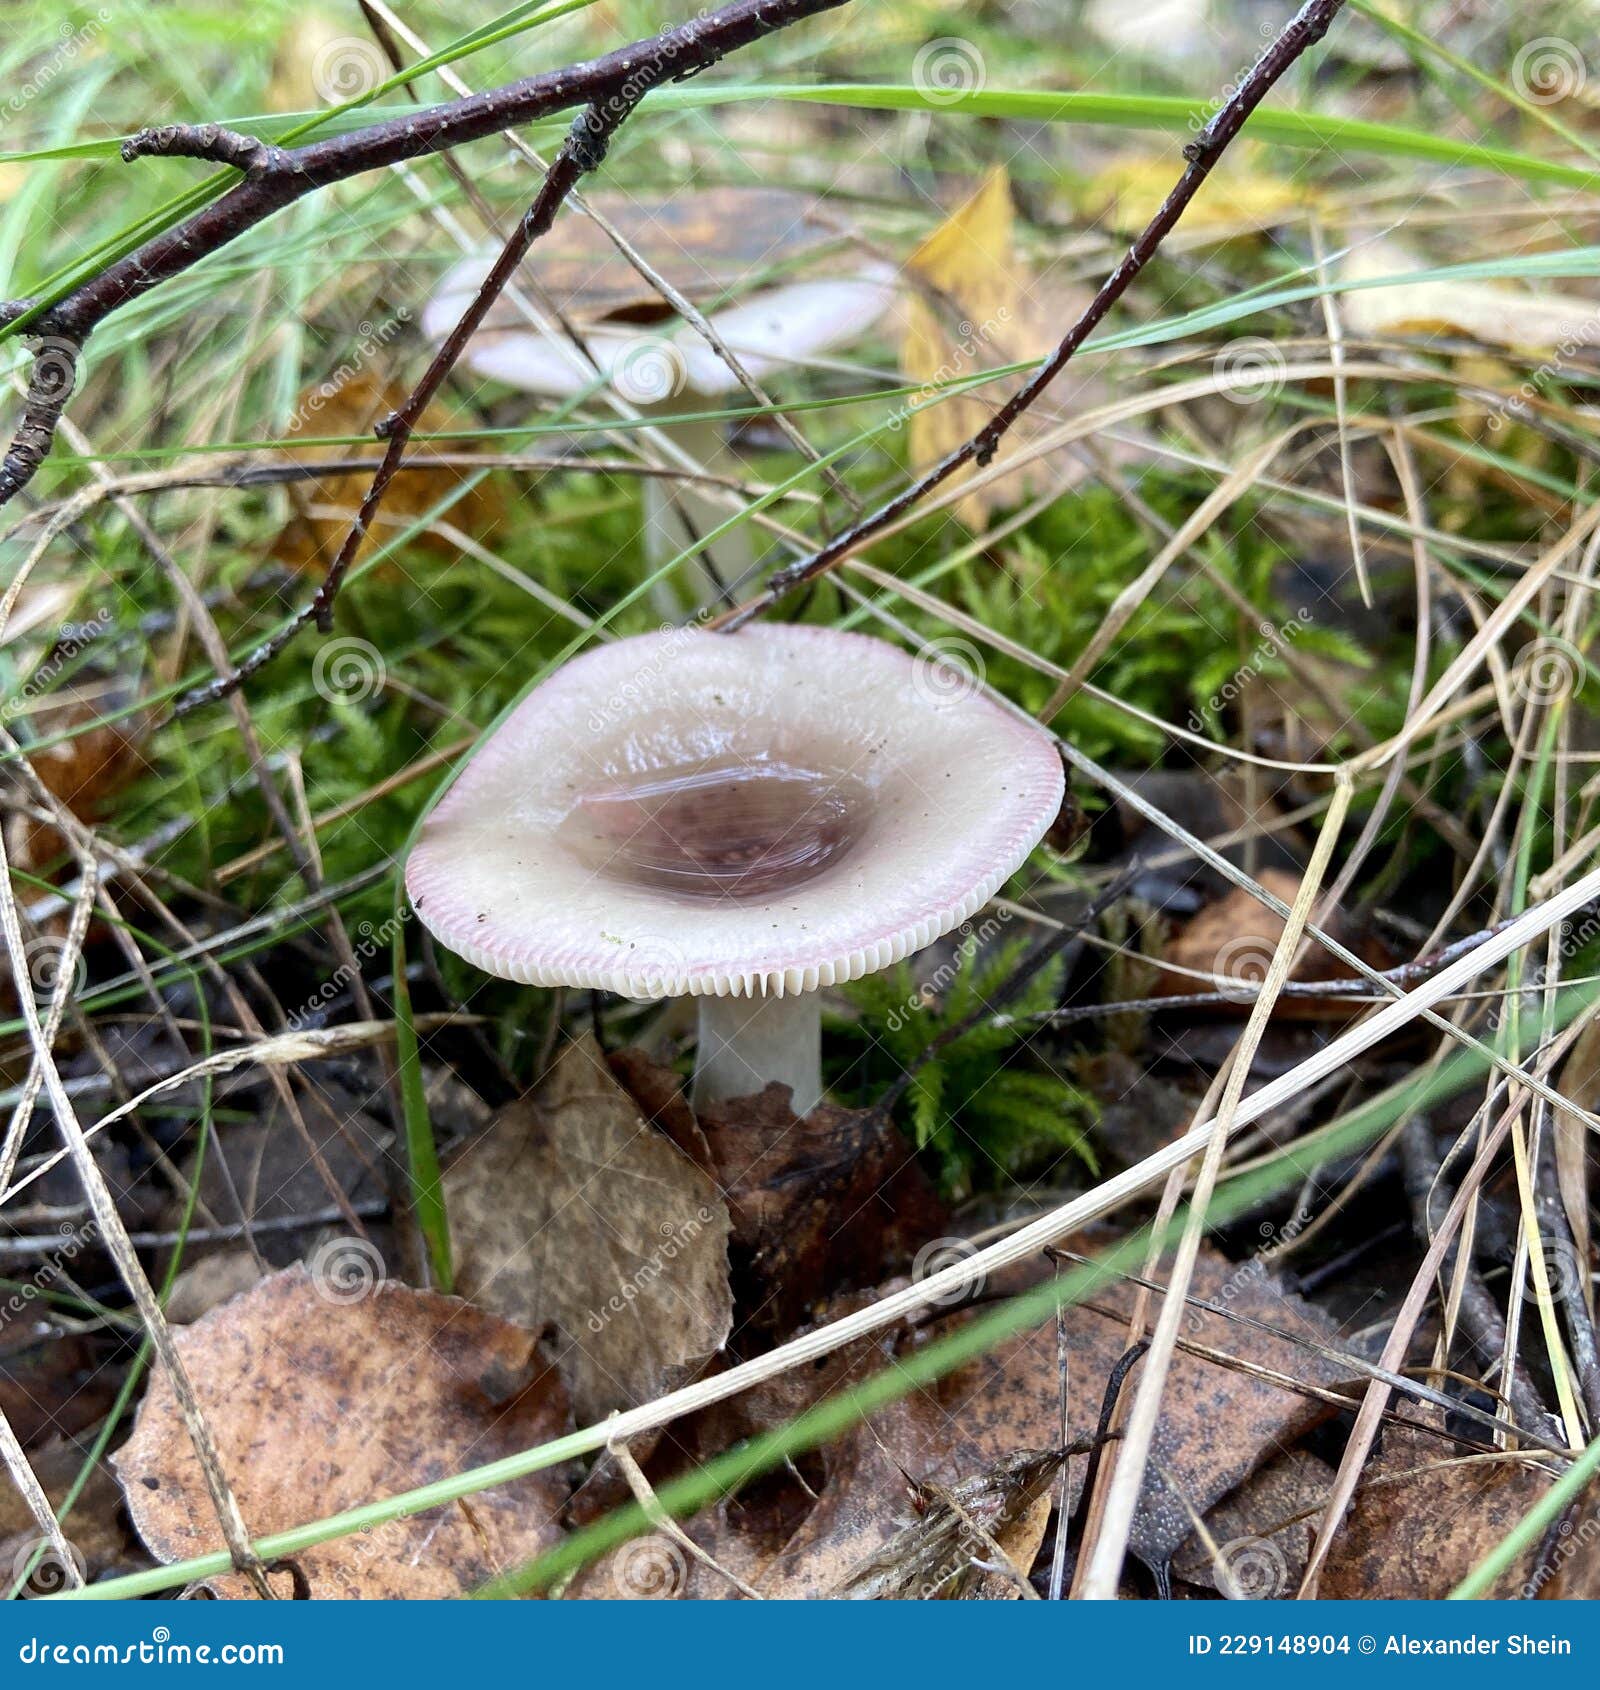 mushroom (rÃÂºssula emÃÂ©tica) in the autumn forest